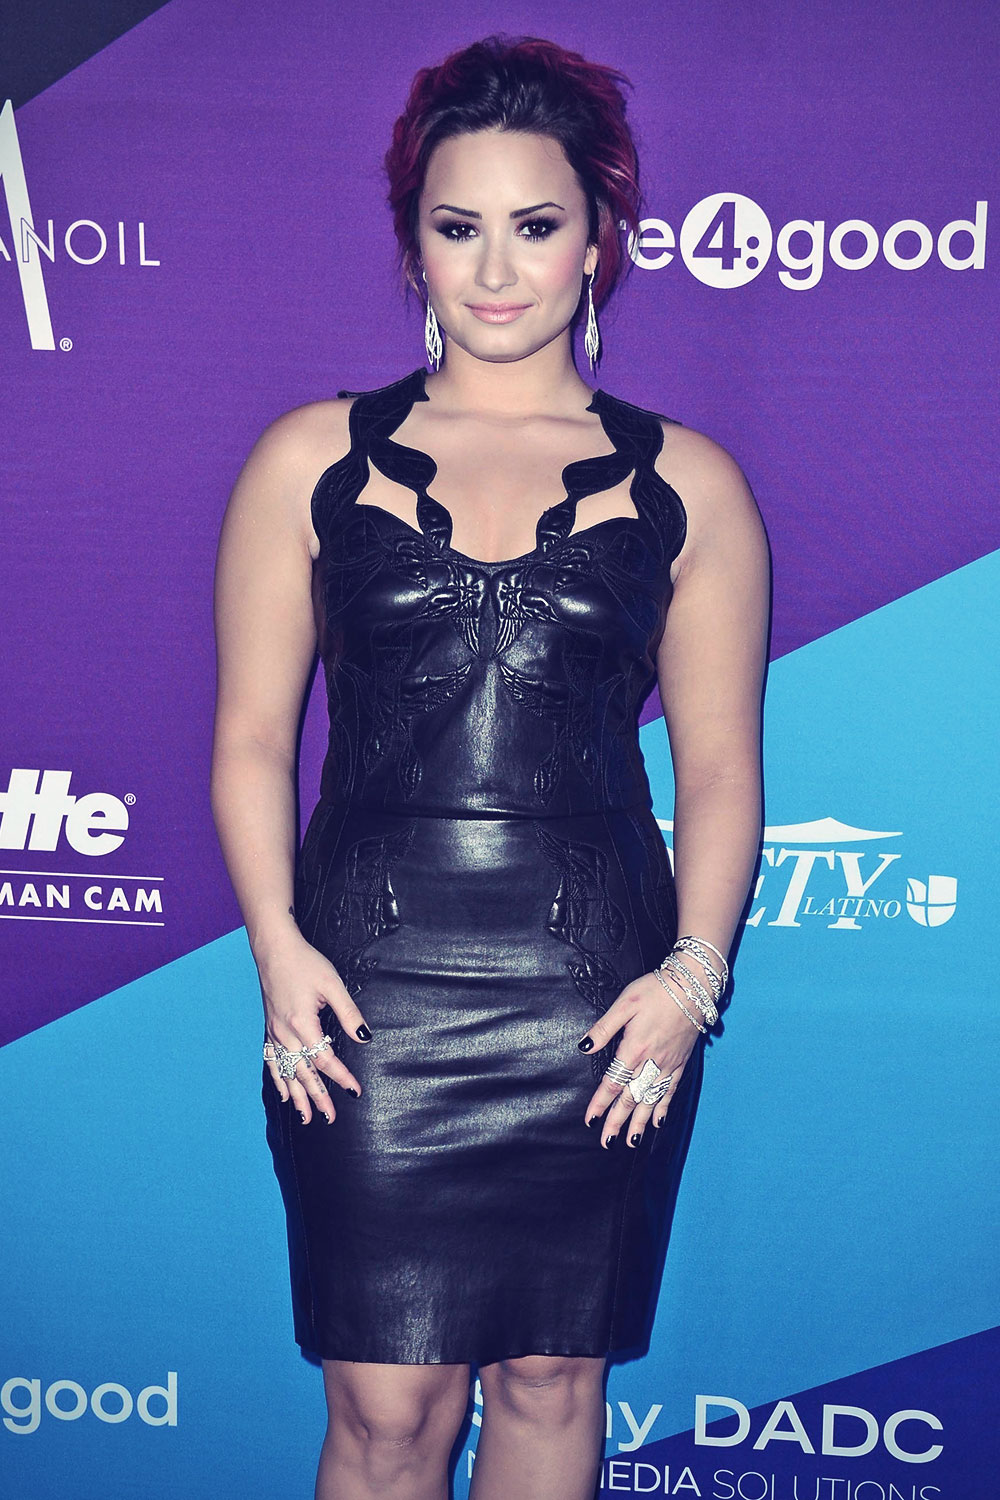 Demi Lovato attends The Gillette Leading Man Cam